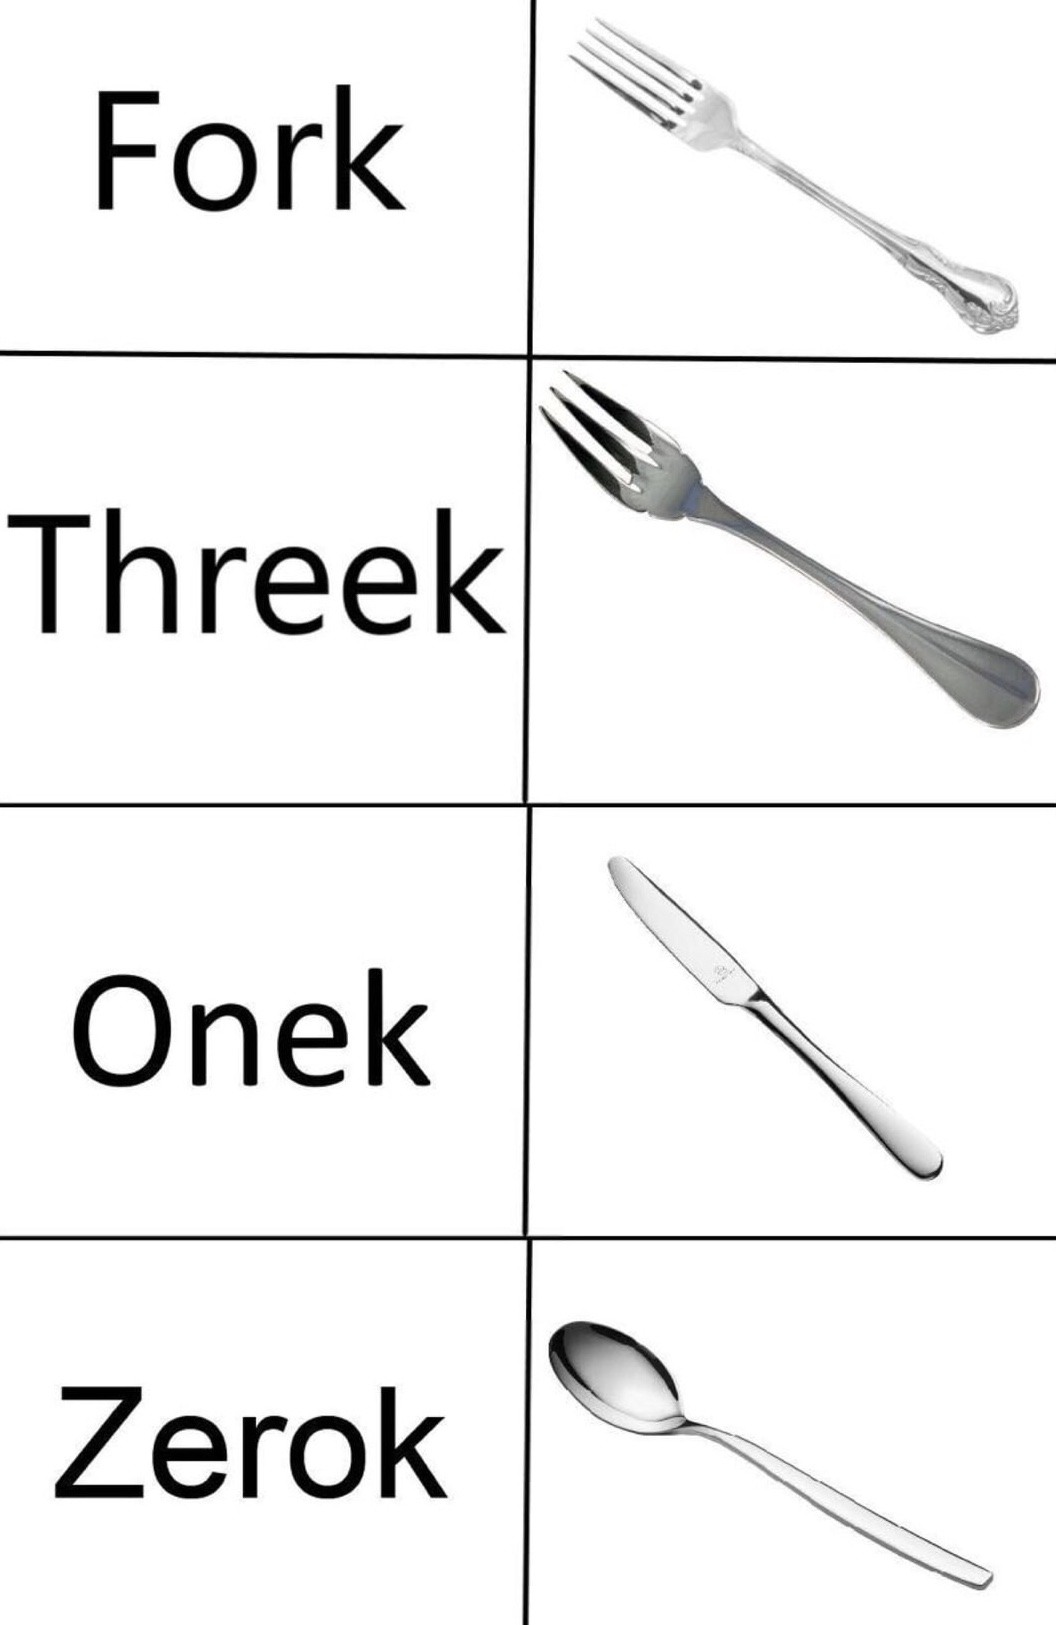 dank meme fork mathematically deconstructed